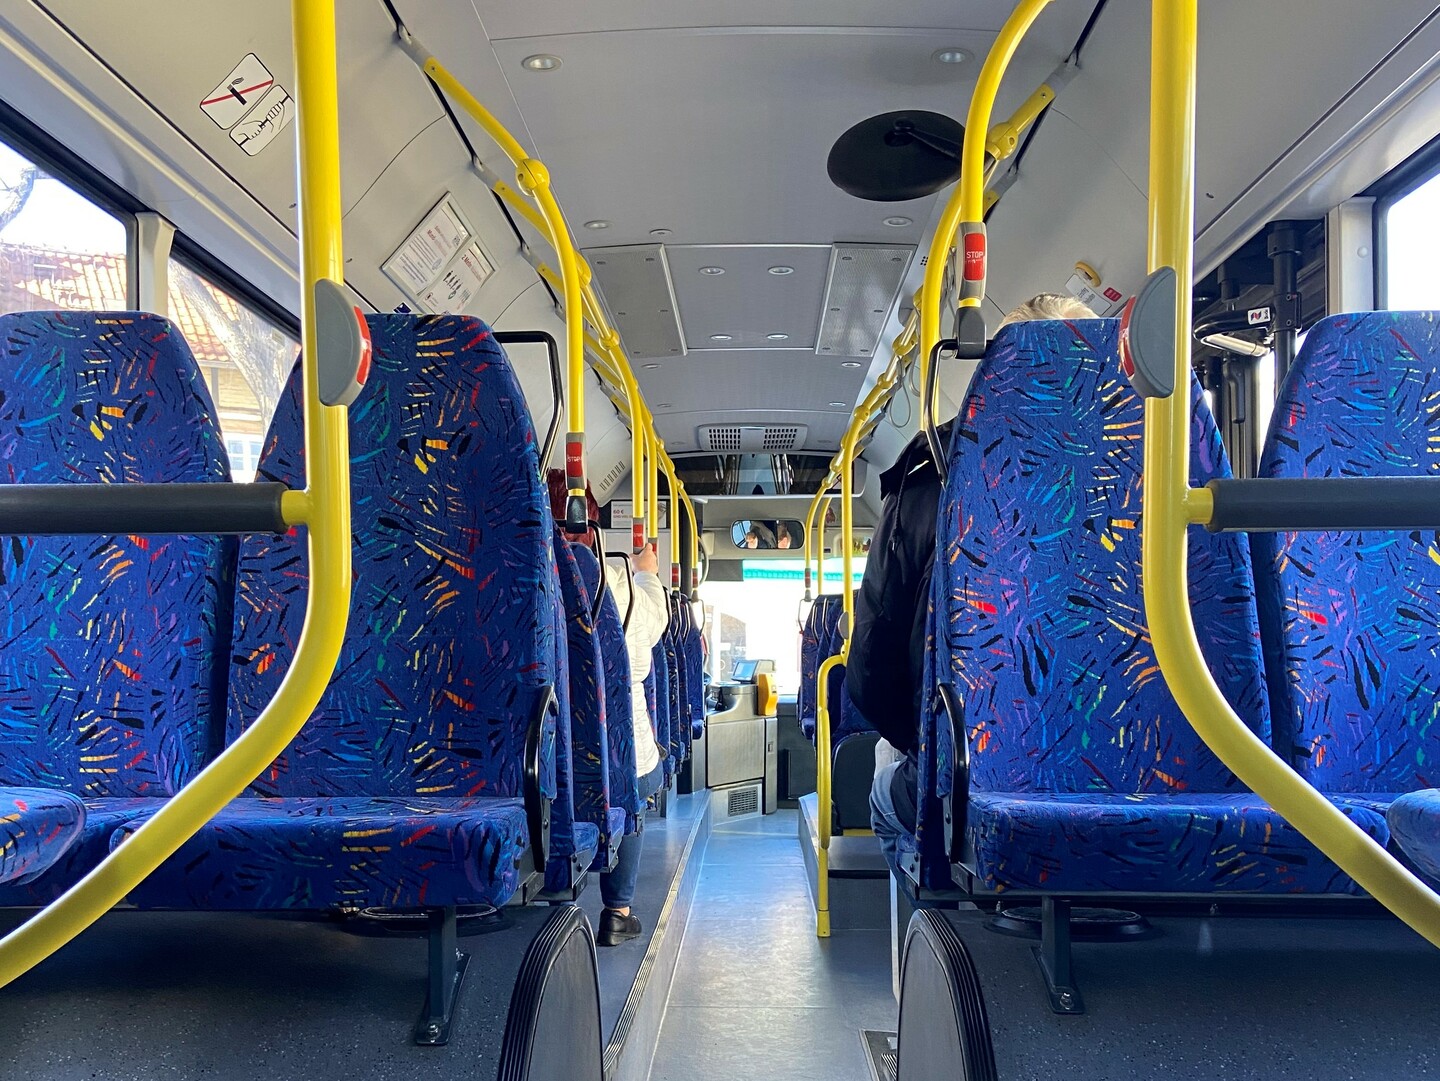 Blick in einen modernen Regionalbus mit blauen Sitzbezügen und gelben Haltestangen.